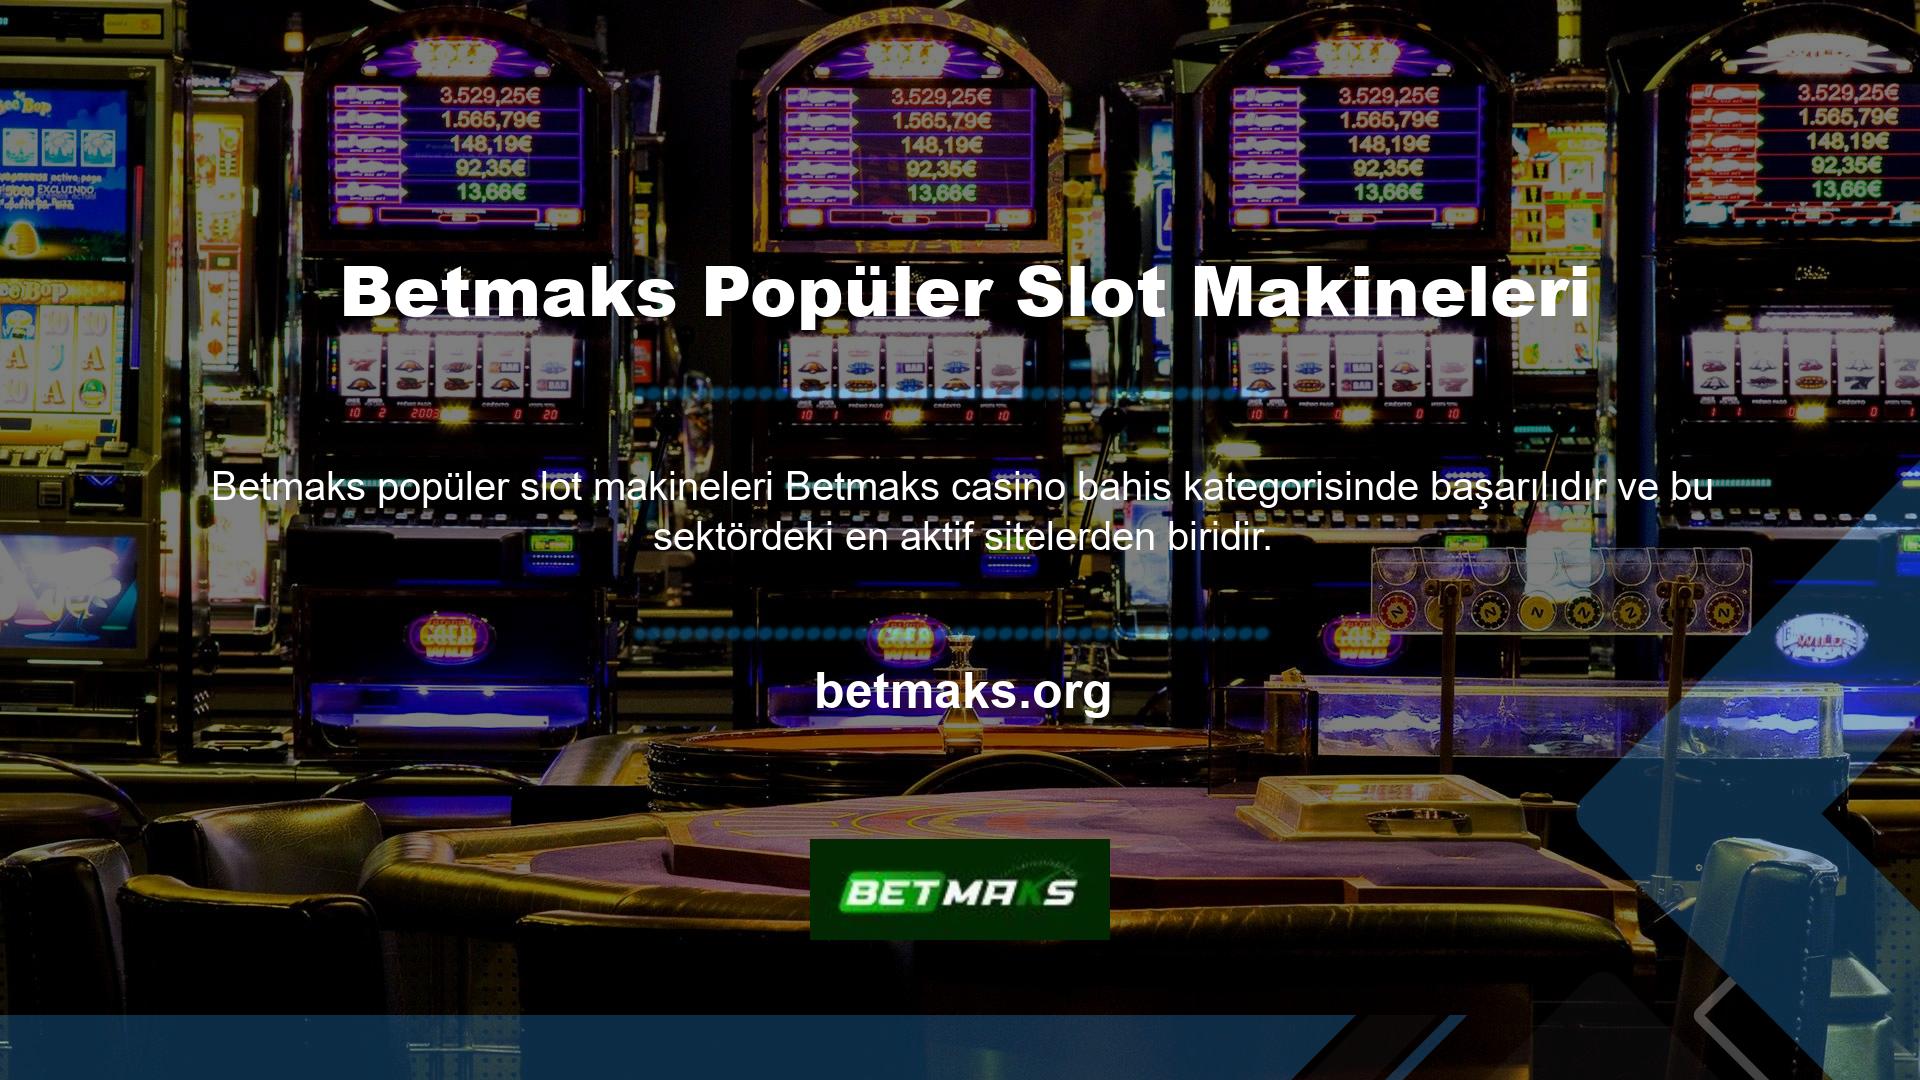 Betmaks Casino, Bakara, Blackjack, Jackpot, Rulet, 3D Slotlar, Klasik Slotlar, Poker, Keno, Bingo, Kartlar ve Masa Oyunları gibi çeşitli oyunları oynayabileceğiniz canlı casino bölümünde yer almaktadır